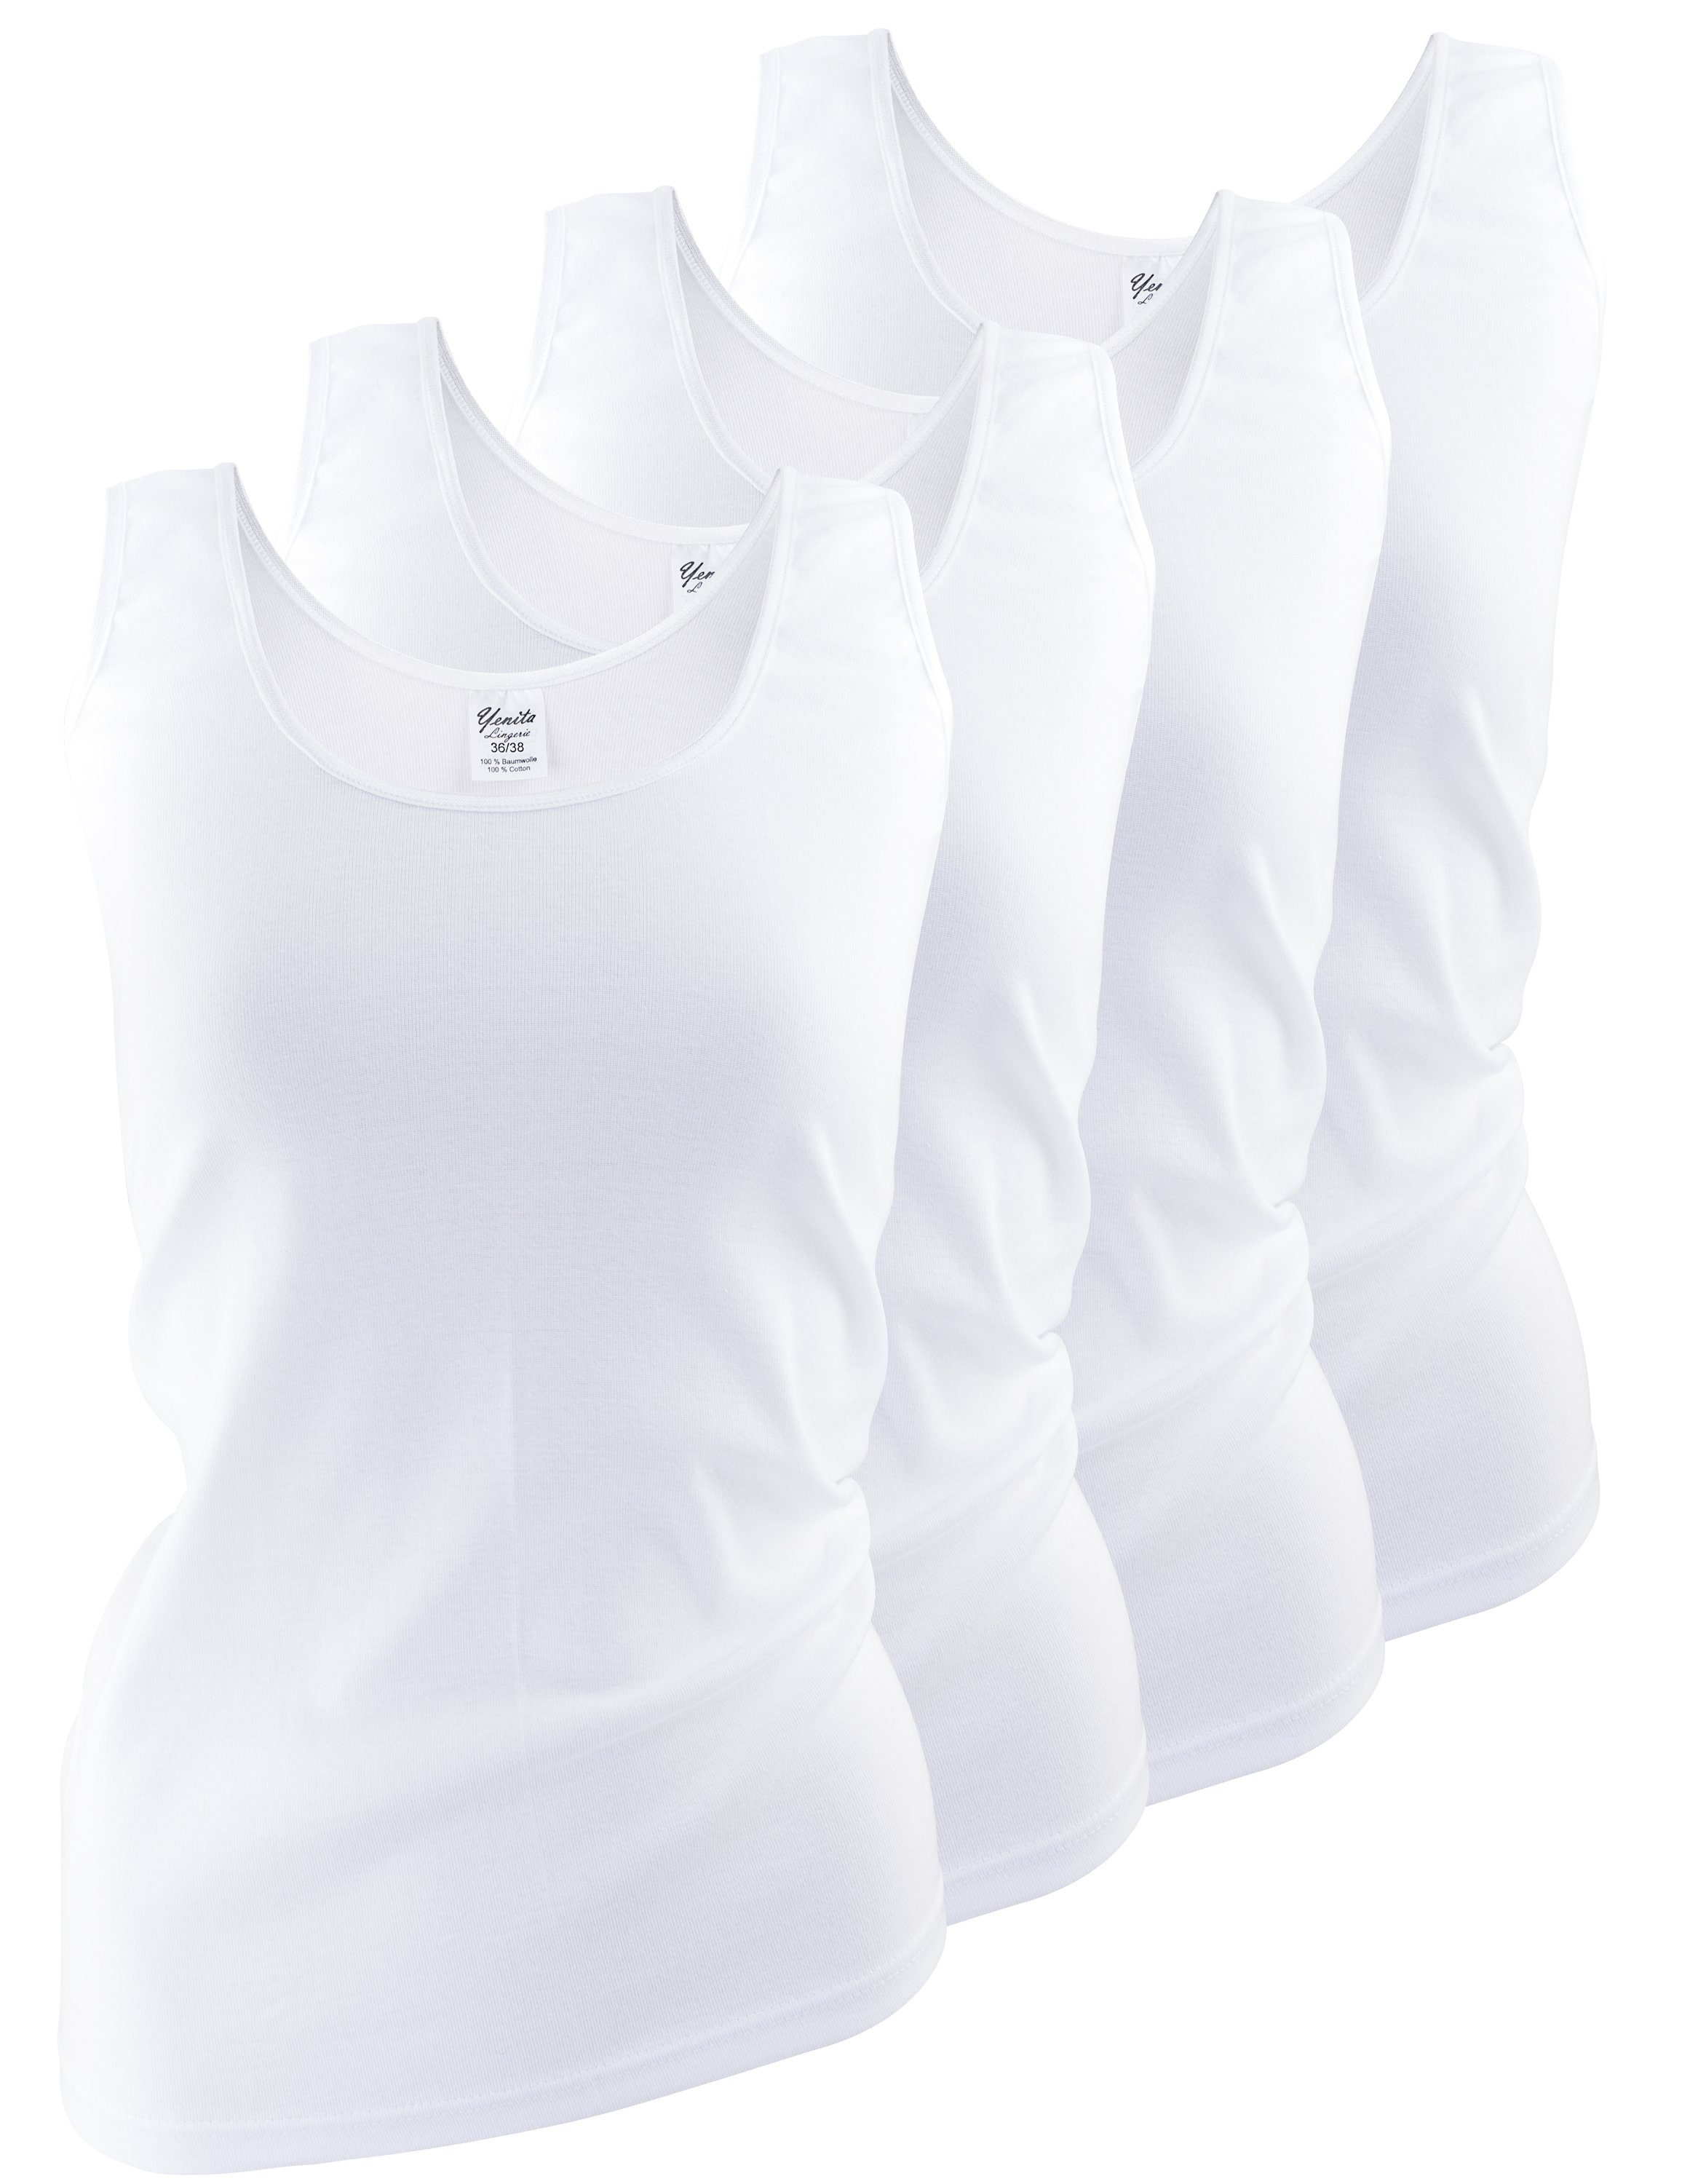 Wäsche/Bademode Unterhemden Yenita® Unterhemd (4 Stück), mit Satinband Einfassung